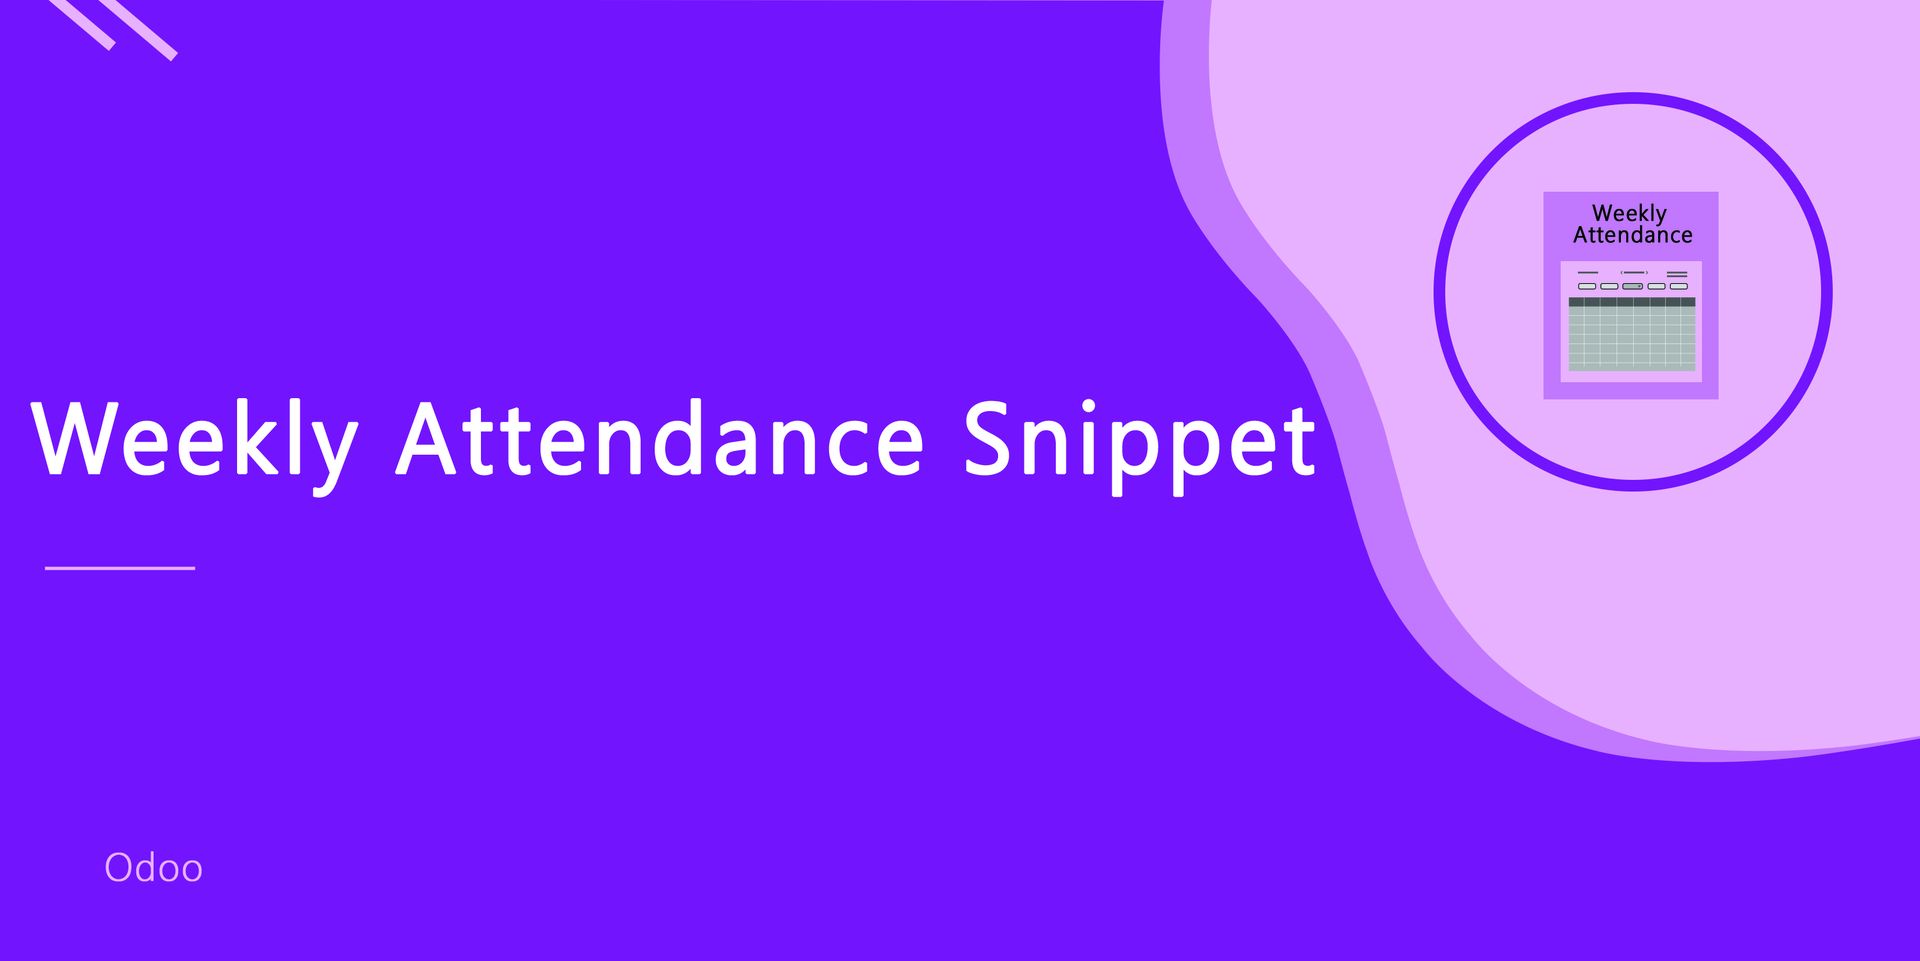 Attendance Snippet